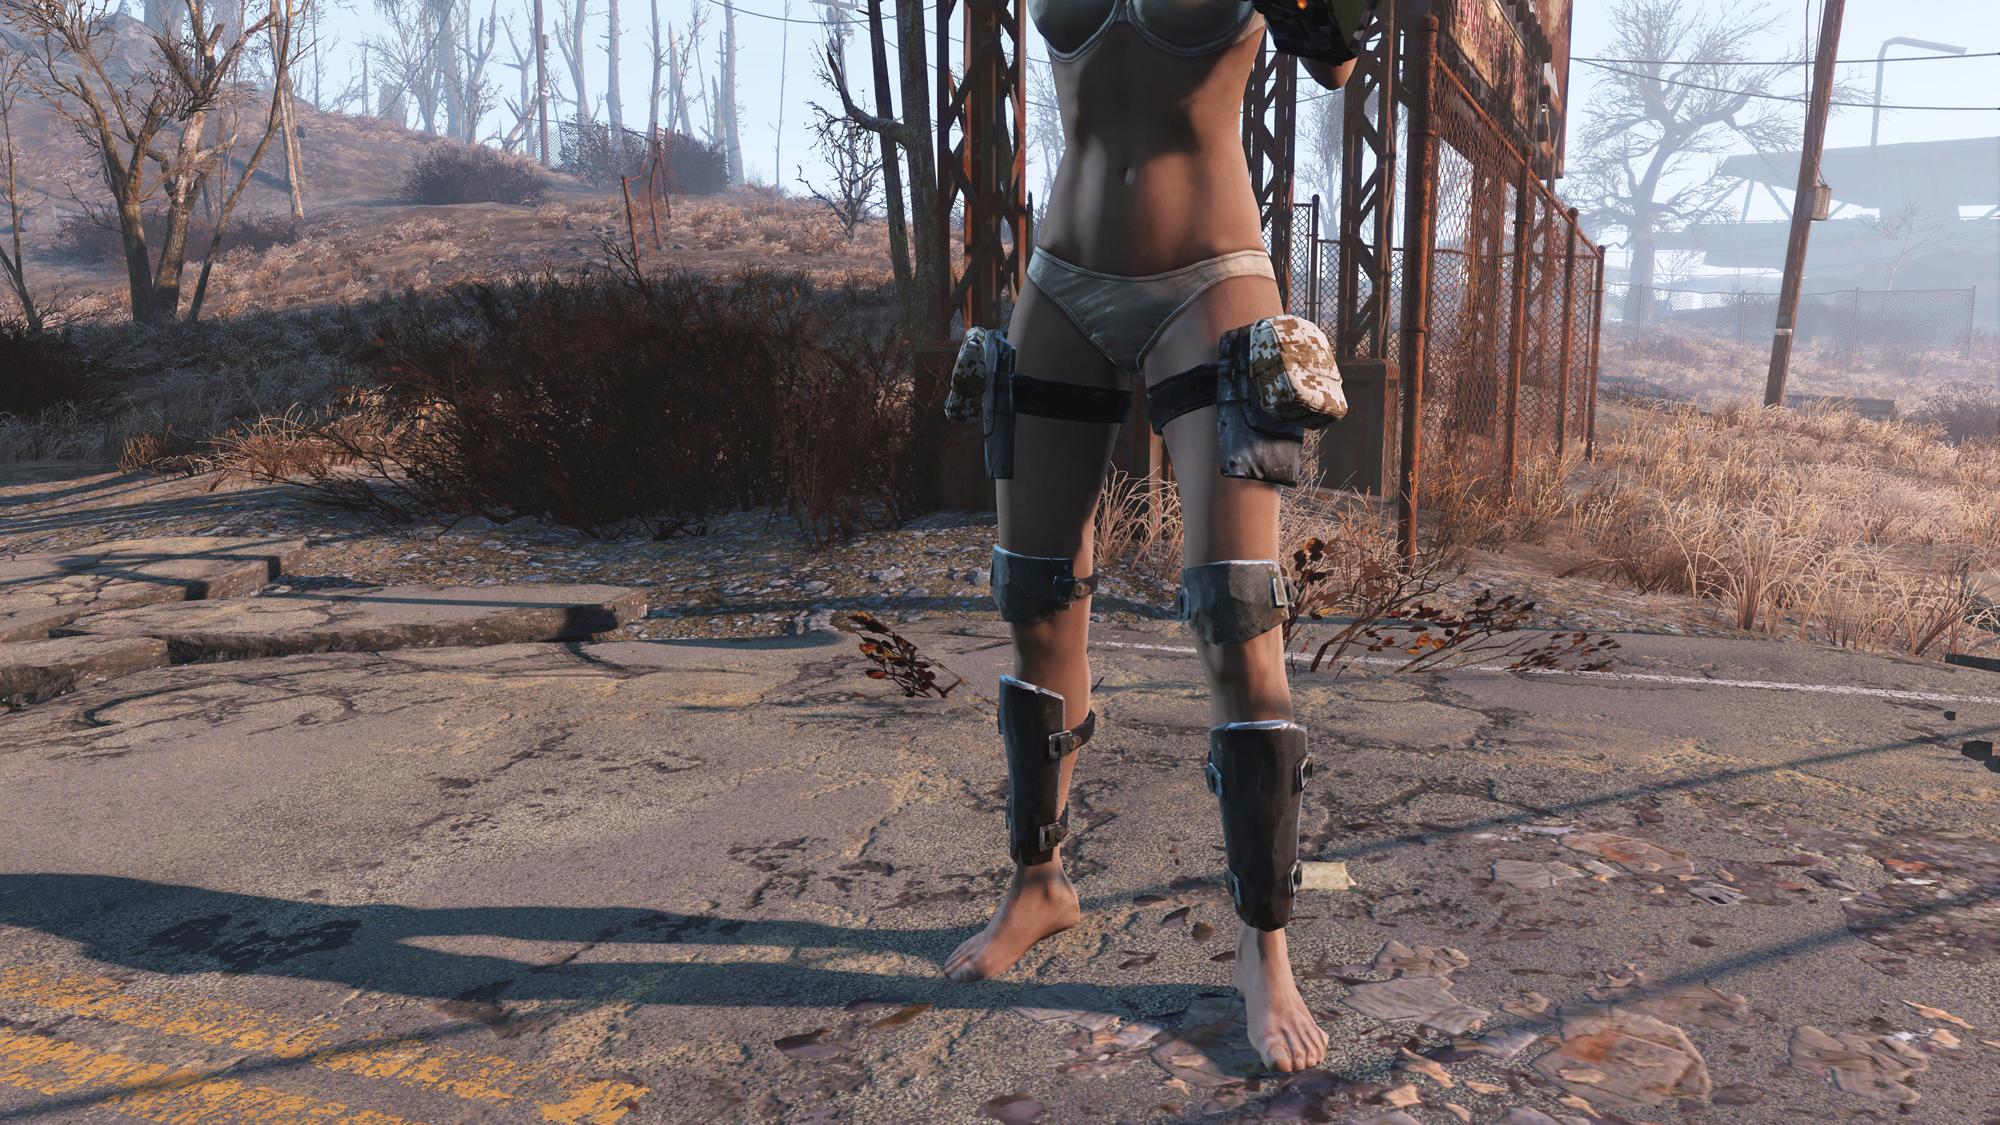 Legs mod. Металлическая брони Fallout 4. Fallout 4 железная броня. Fallout 4 мод металлическая броня. Fallout 4 металлическая броня.